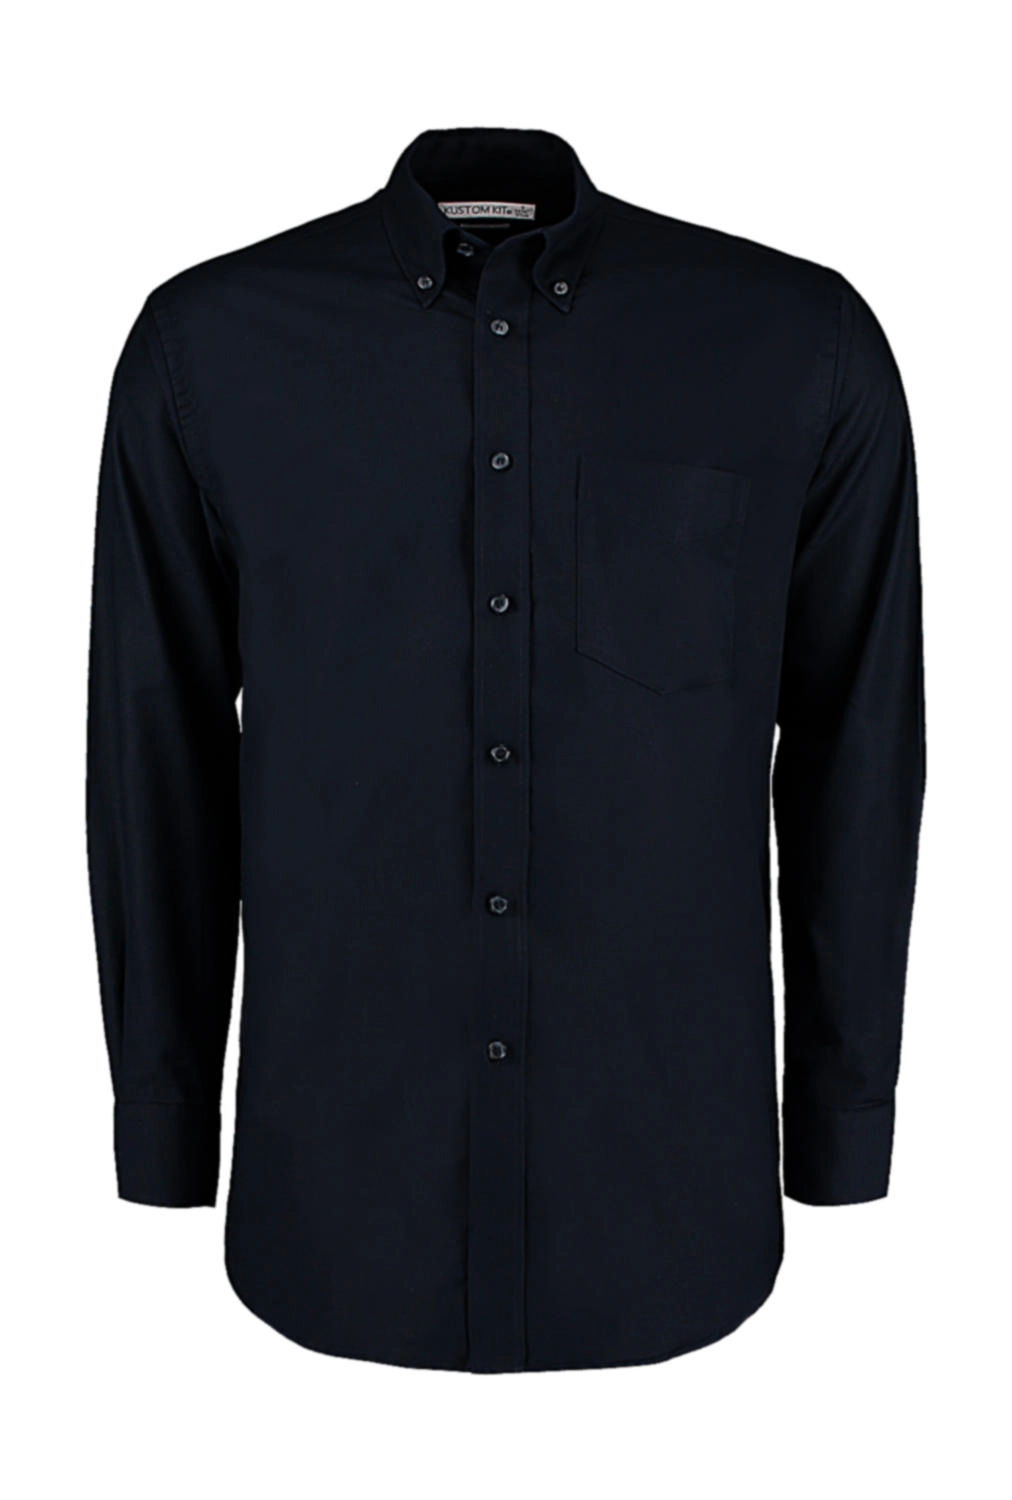 Classic Fit Workwear Oxford Shirt zum Besticken und Bedrucken in der Farbe French Navy mit Ihren Logo, Schriftzug oder Motiv.